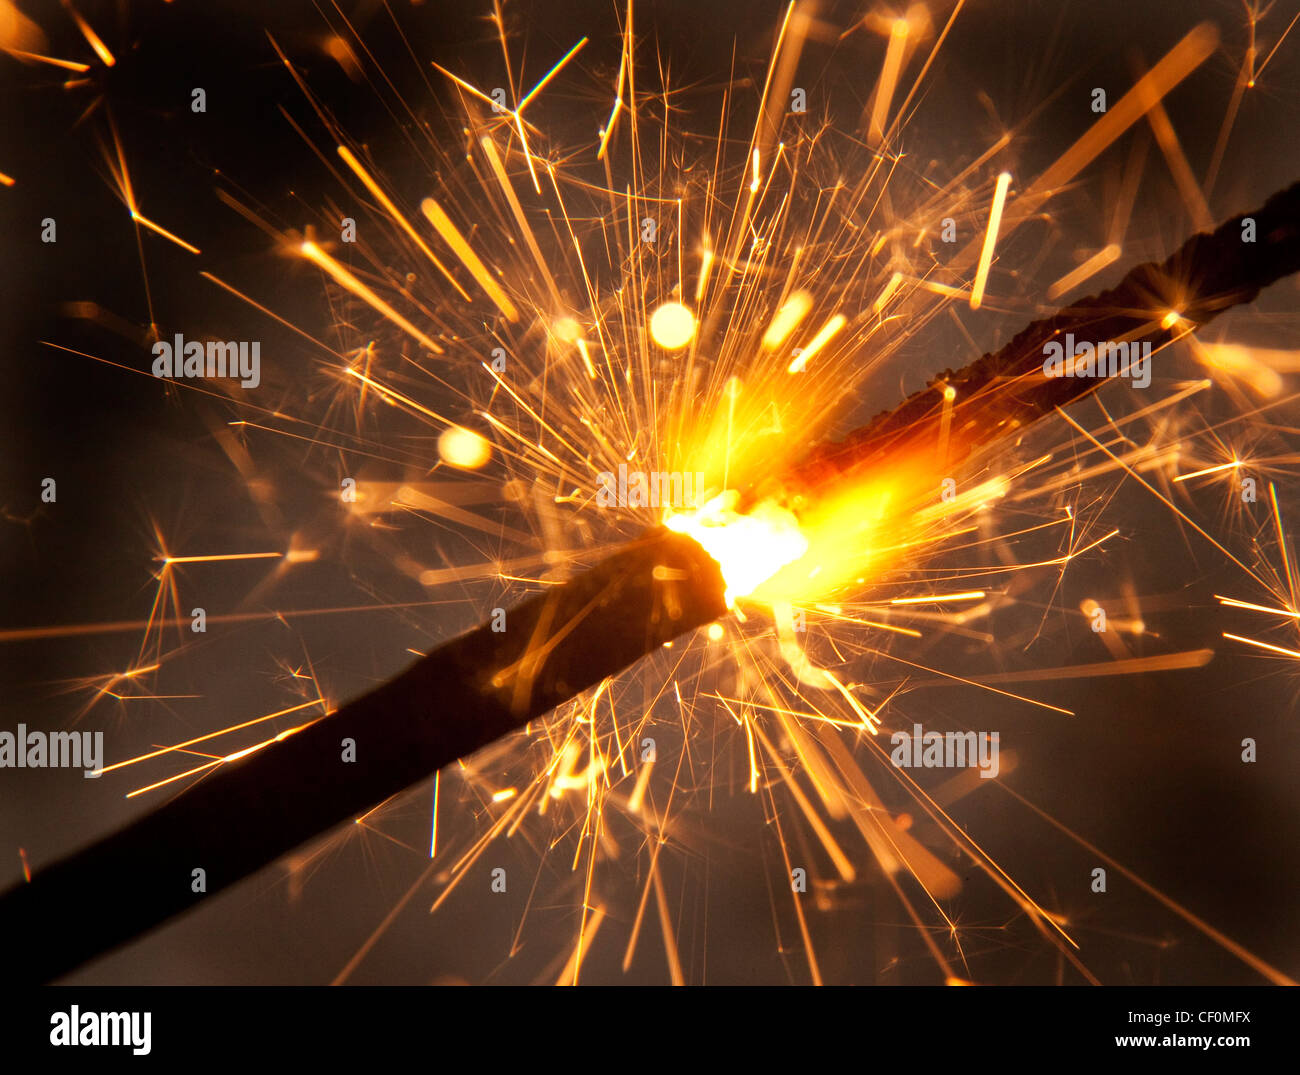 A Burning sparkler firework close-up de cracher des étincelles Banque D'Images